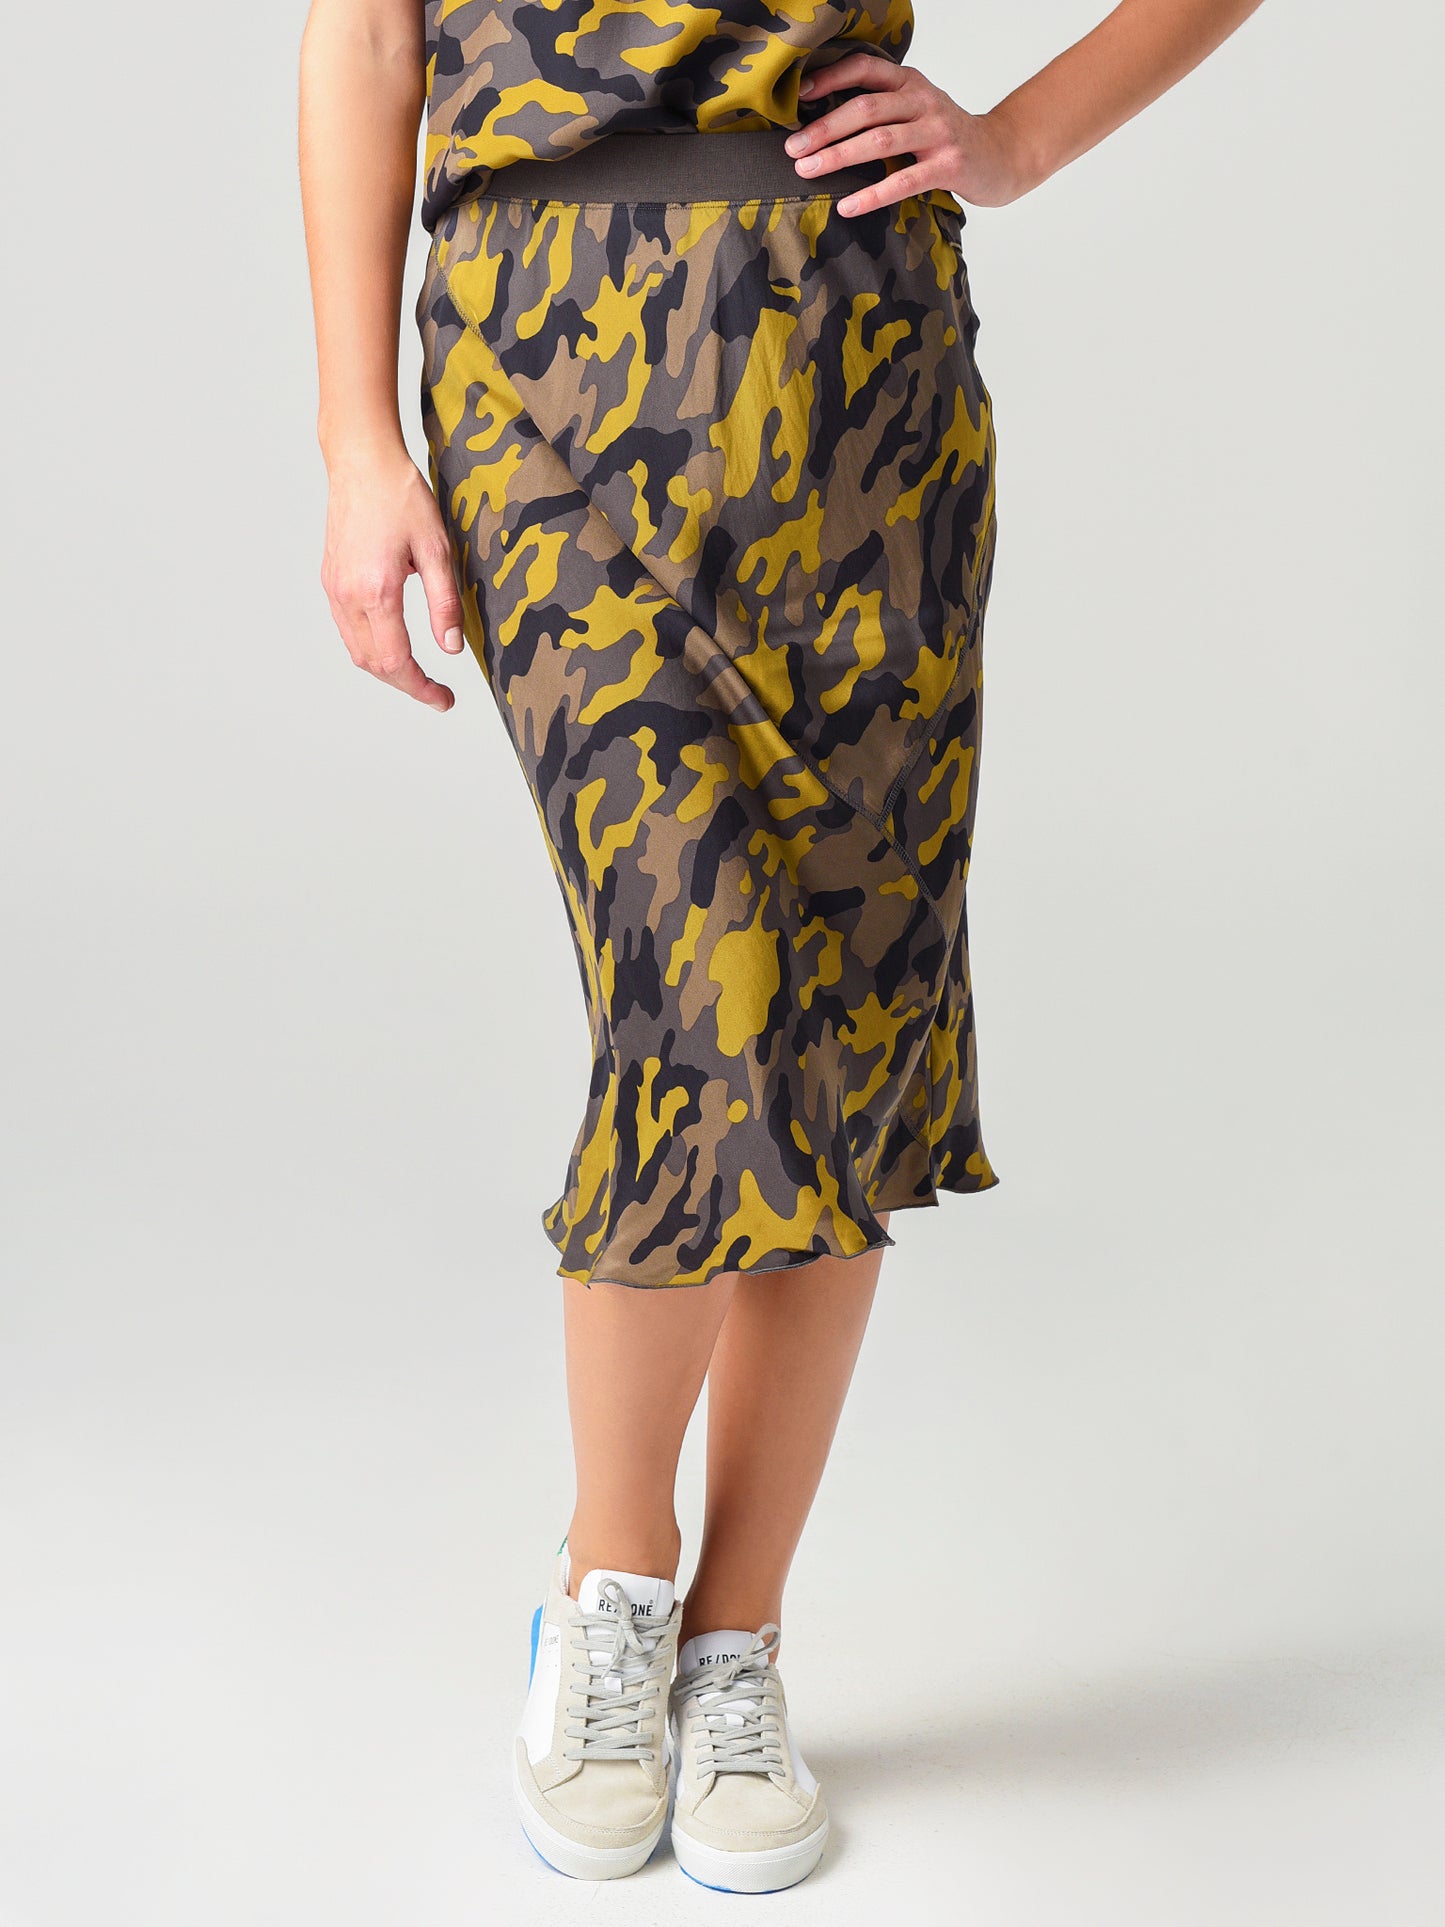 ATM Women's Silk Camo Pull-On Skirt